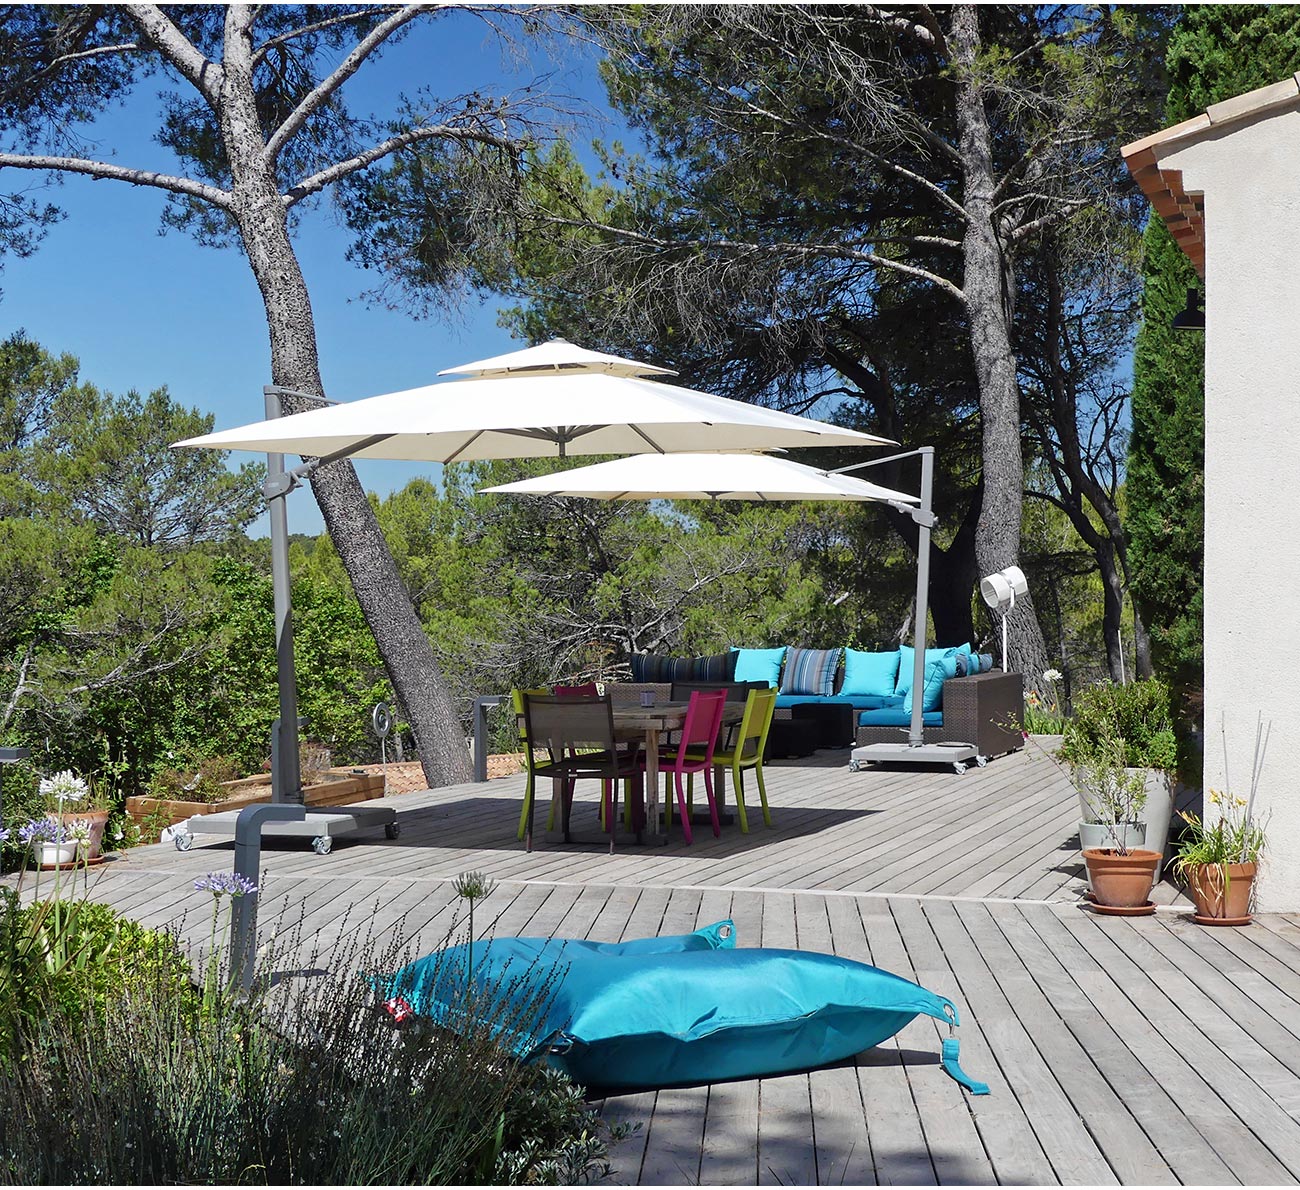 Atelier Naudier - Architecte paysagiste concepteur - Montpellier et Aix en Provence - Terrasse bois et mobilier de jardin - aménagement jardin